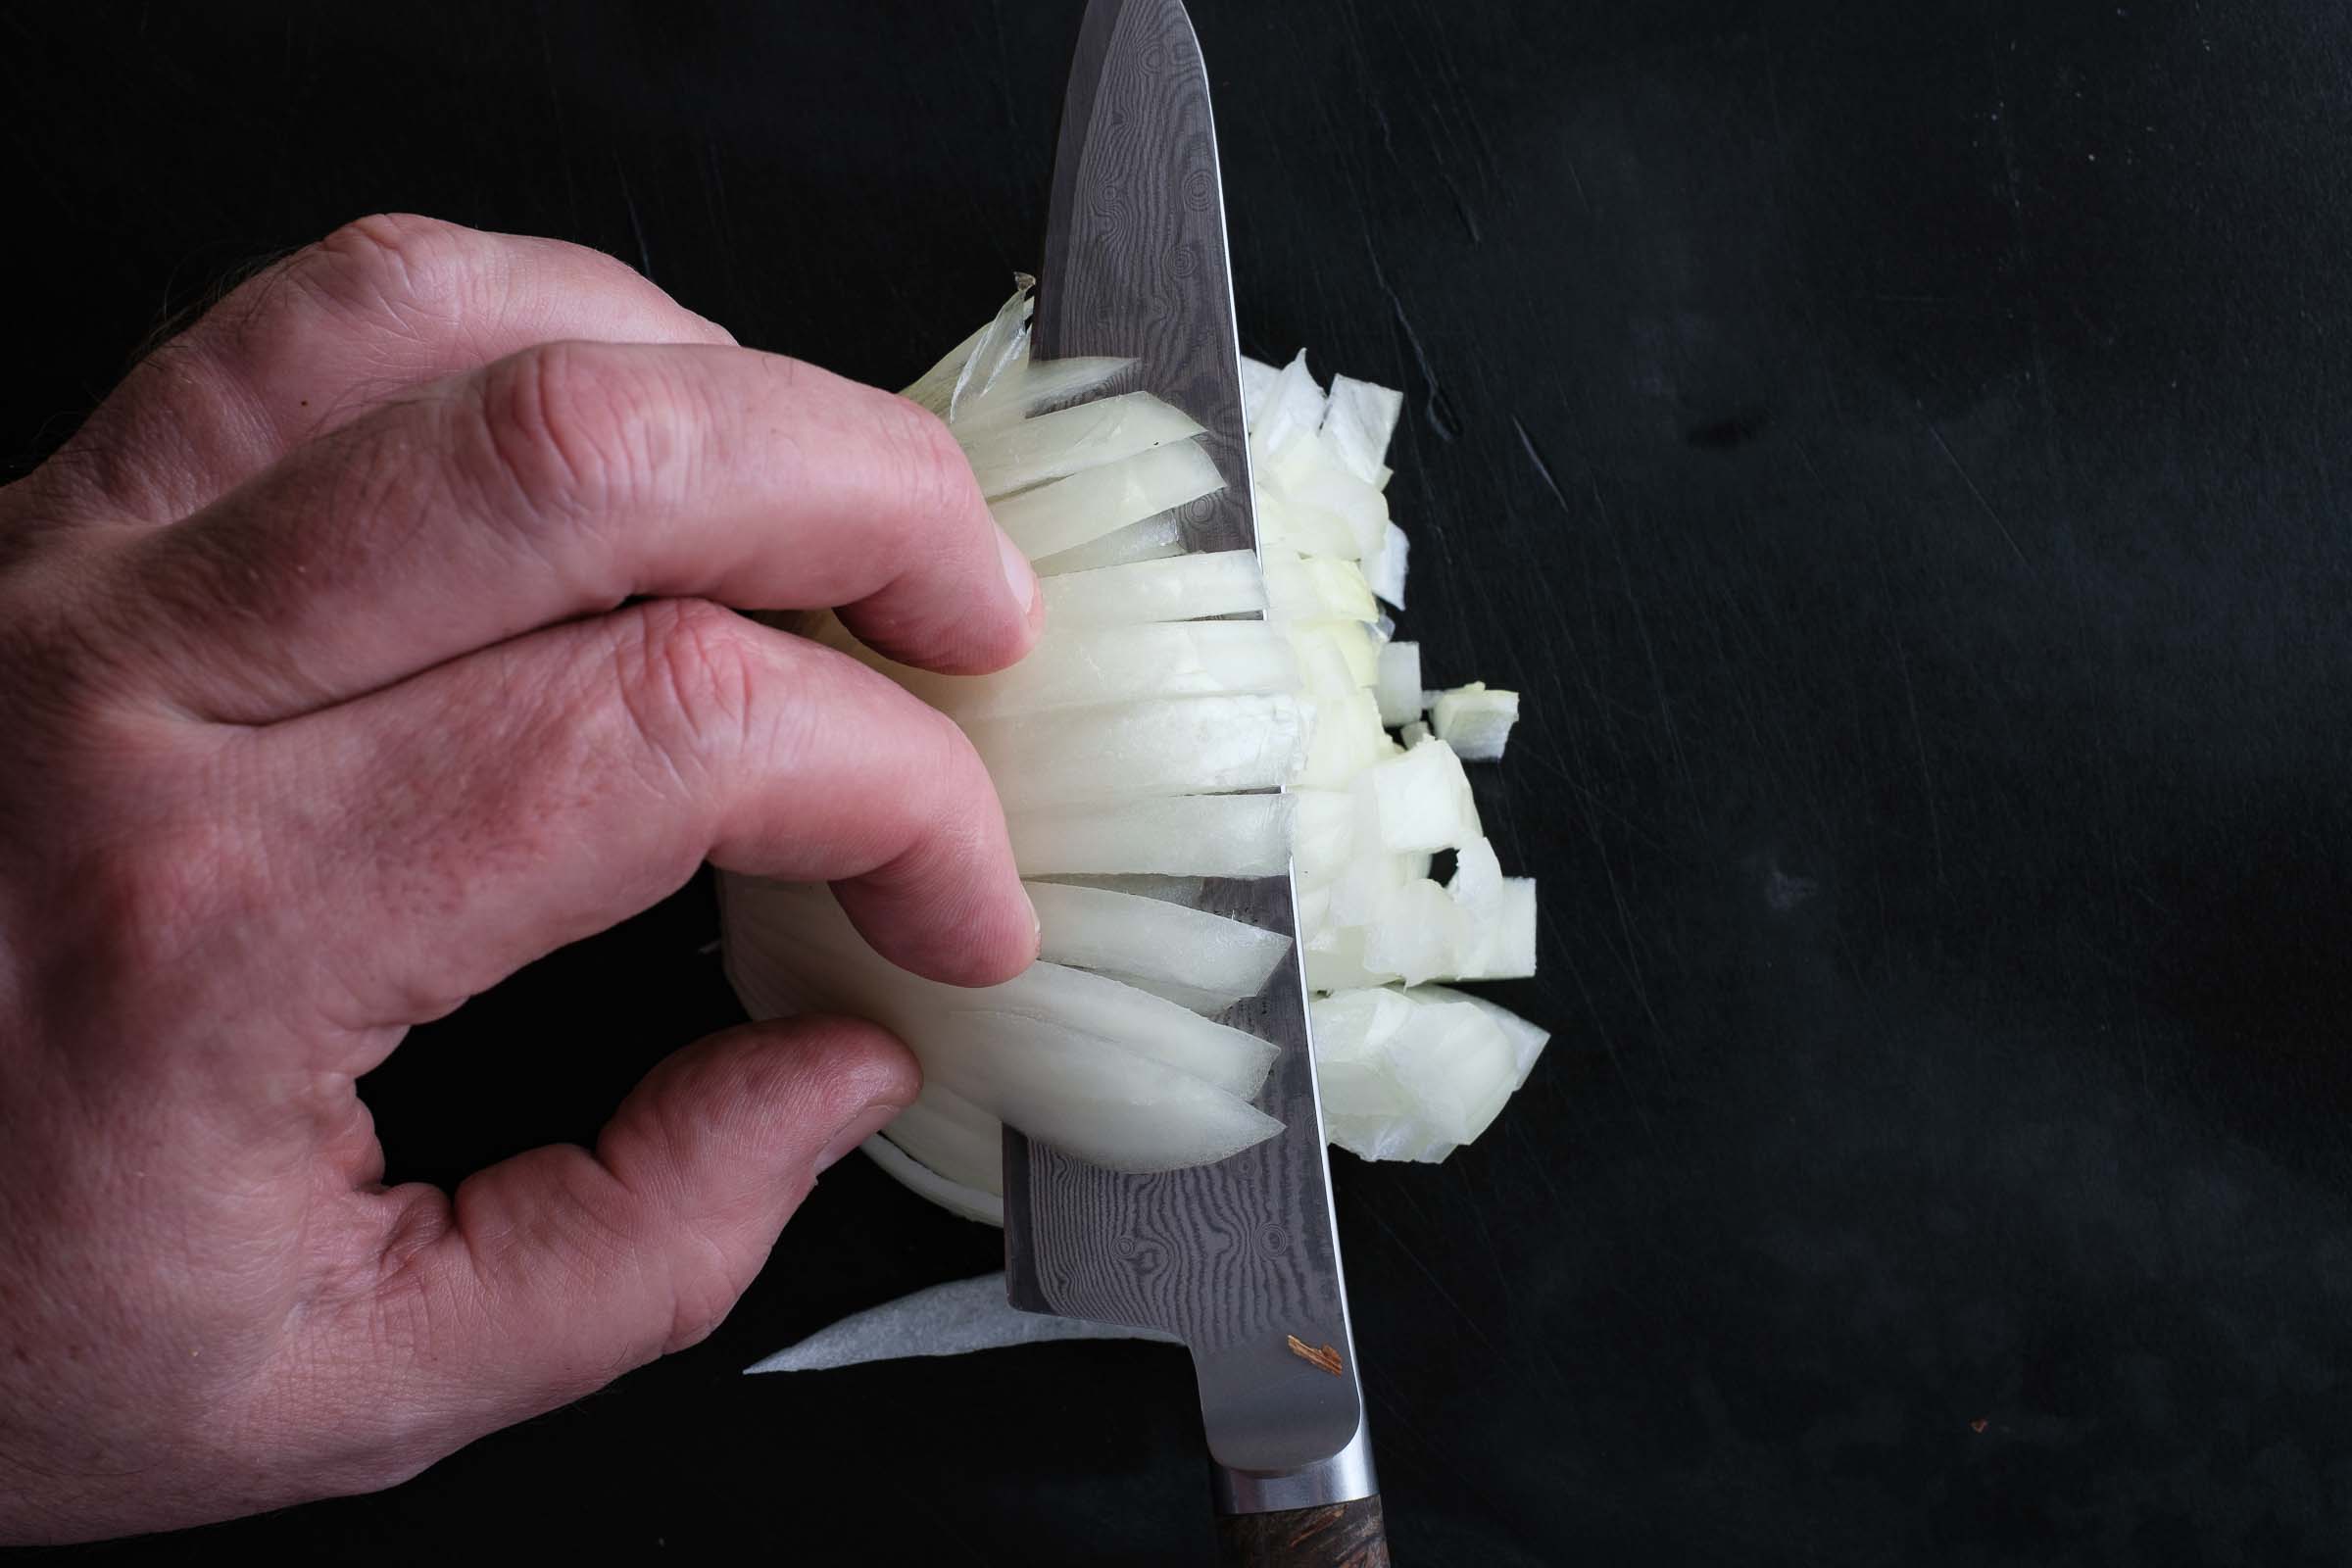 Slice the onion horizontally